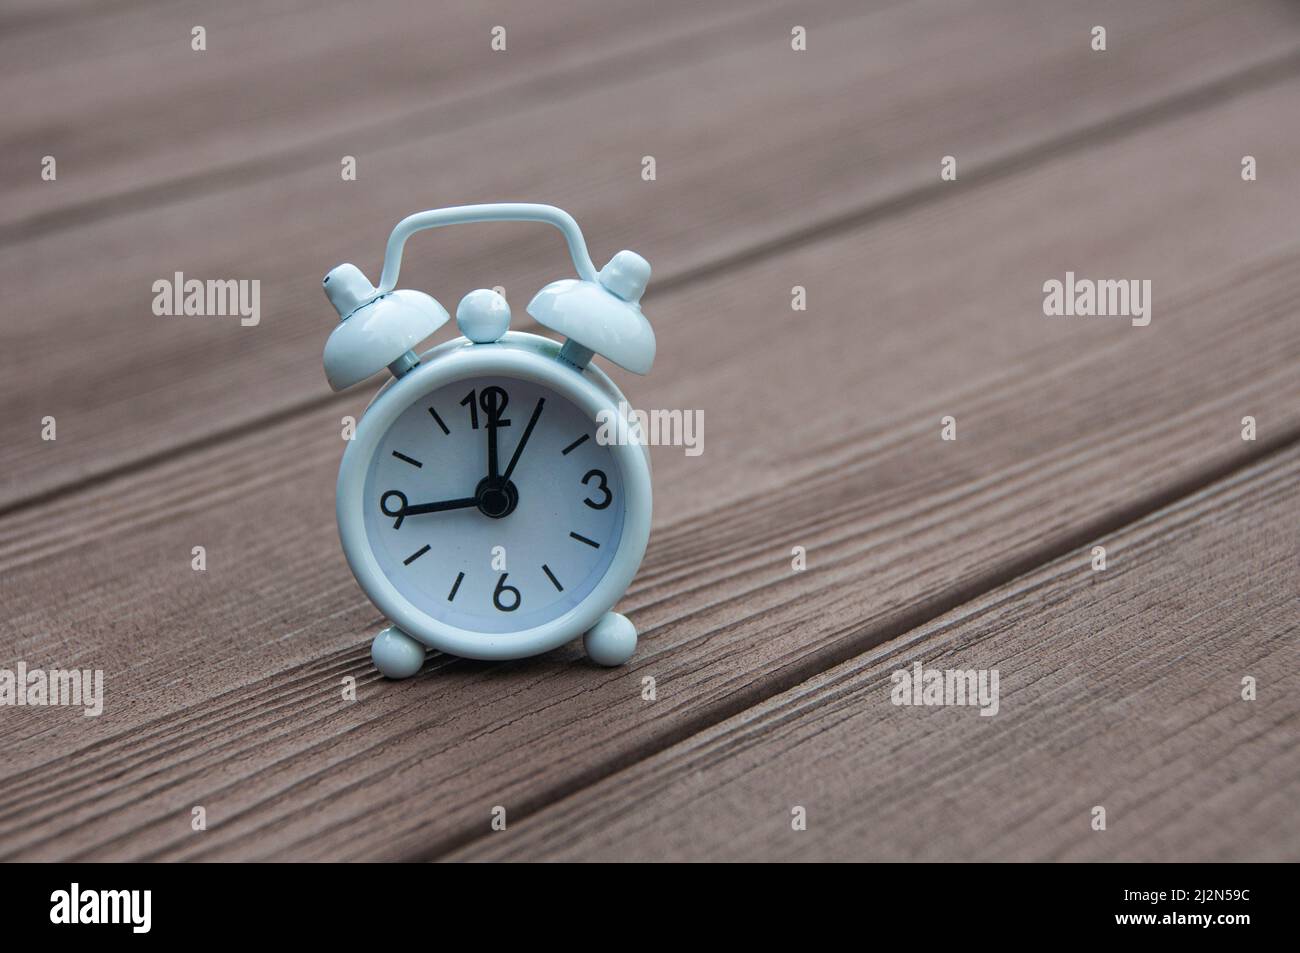 Reloj de alarma blanco ajustado a las 9 en punto. Concepto de mañana  Fotografía de stock - Alamy